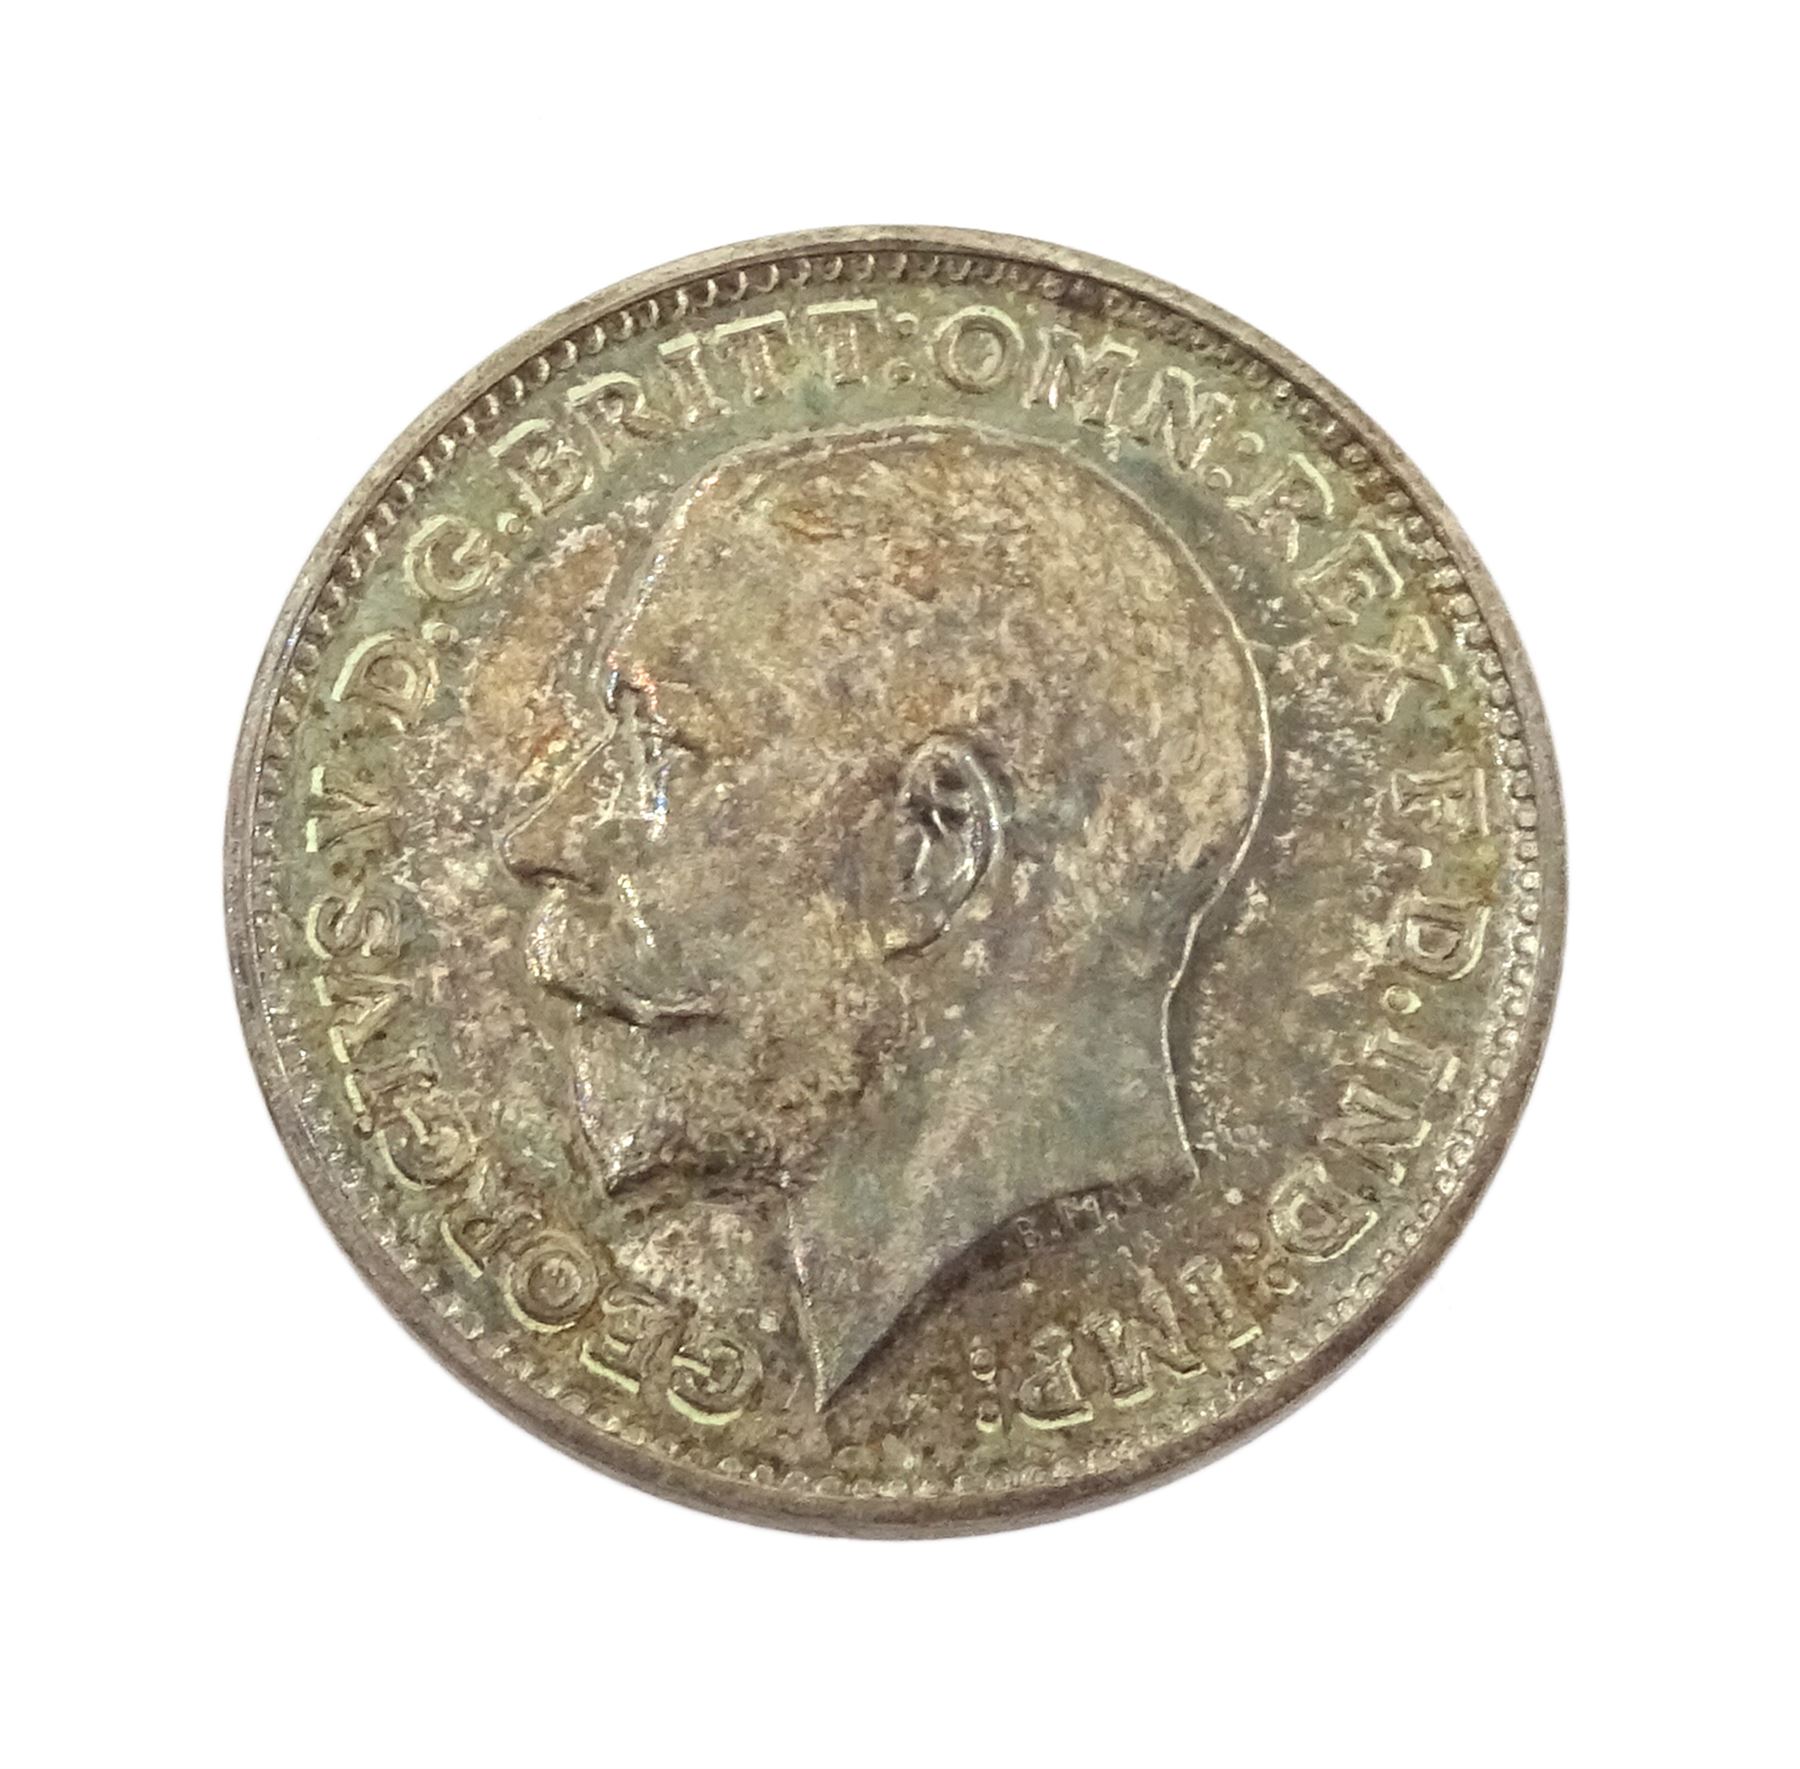 King George V 1911 proof short coin set - Image 18 of 24